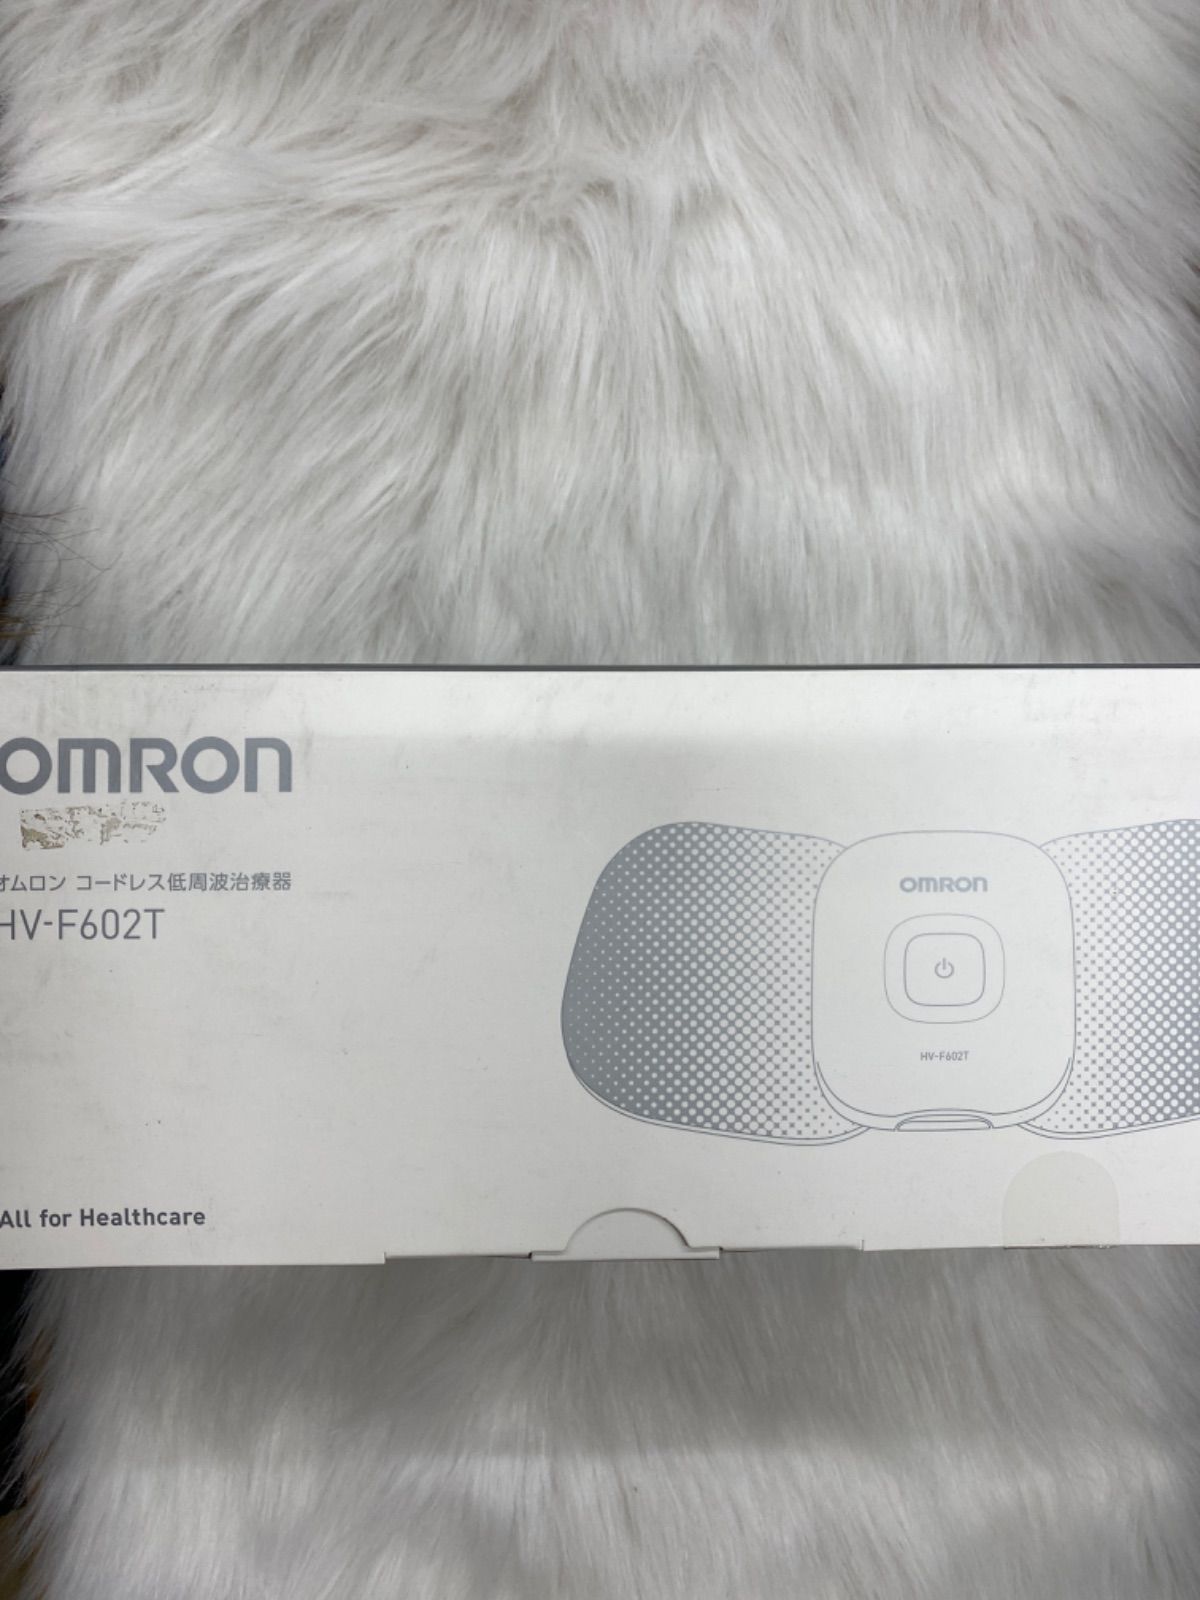 OMRON (オムロン) コードレス低周波治療器 HV-F602T 未使用品 - 美容、健康